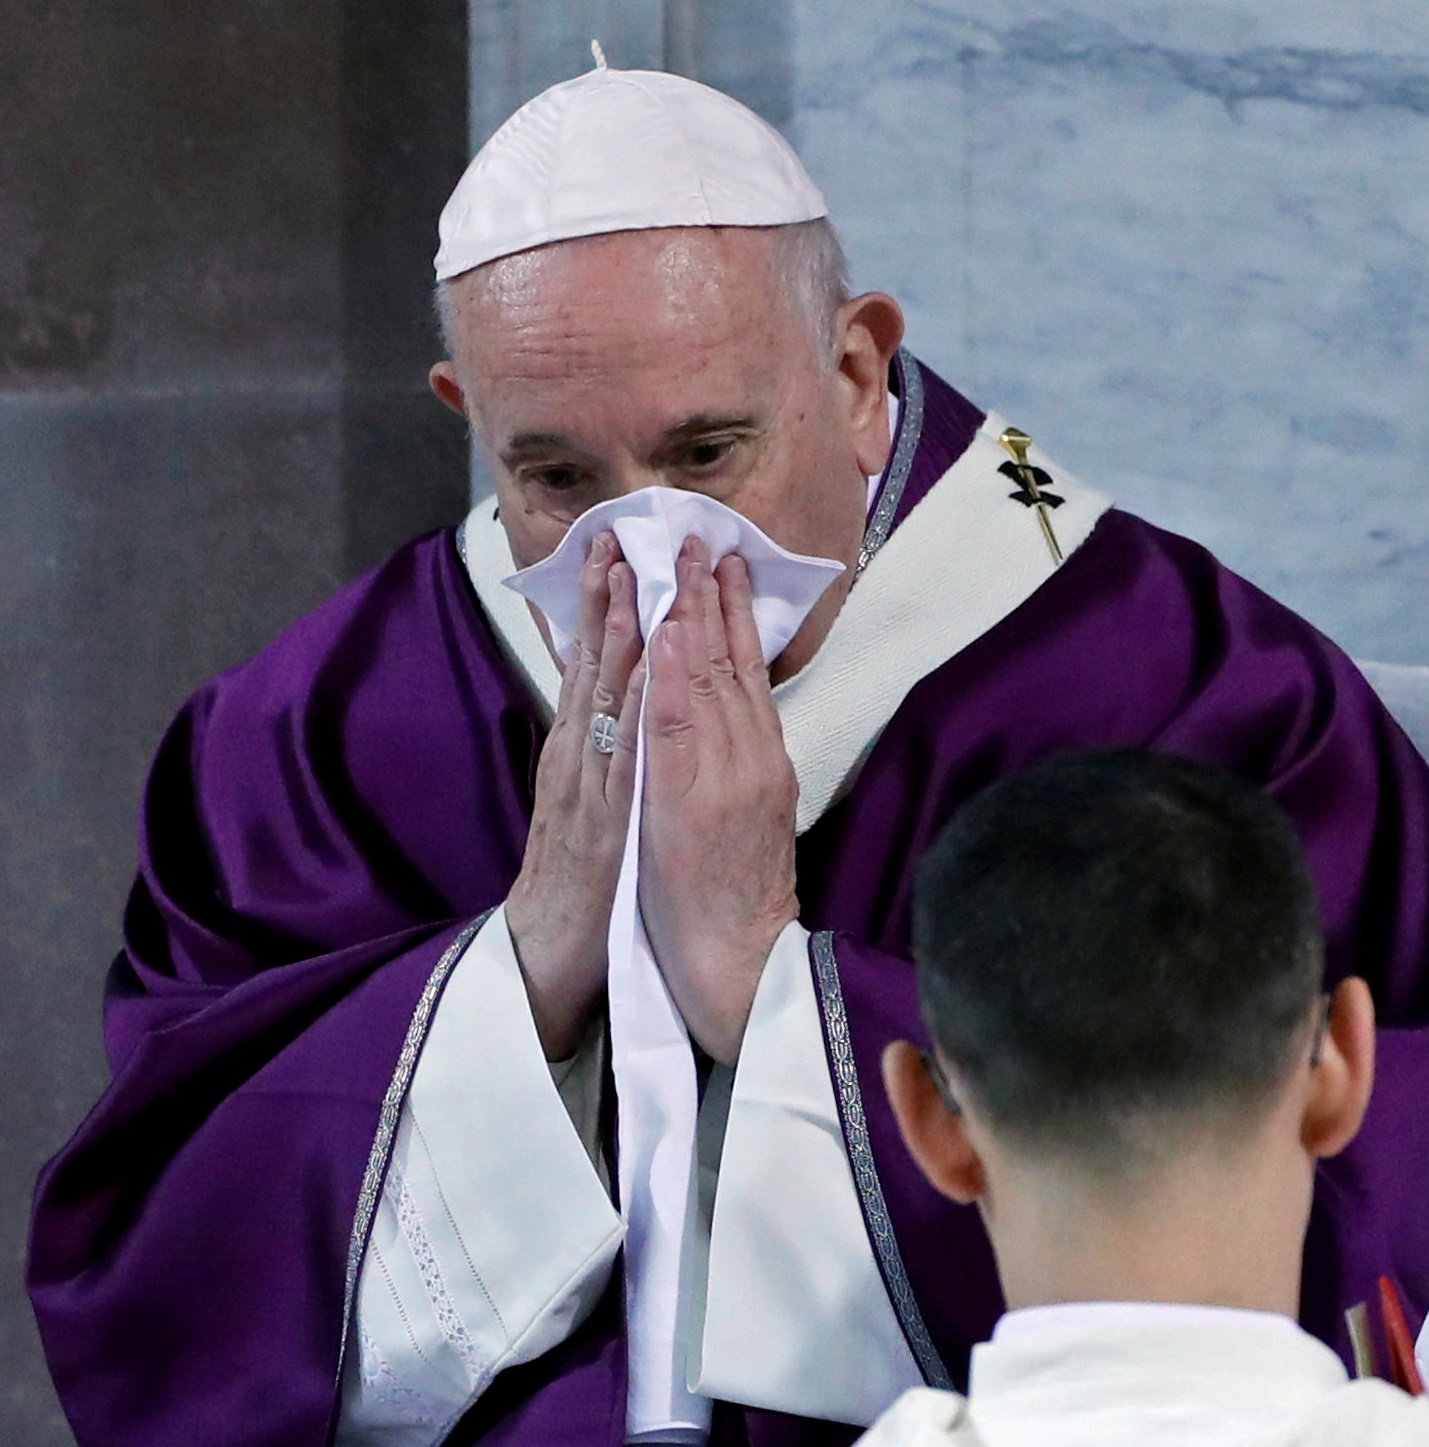 Κορονοϊός: Ανησυχία για την υγεία του Πάπα Φραγκίσκου που ακύρωσε εμφανίσεις του